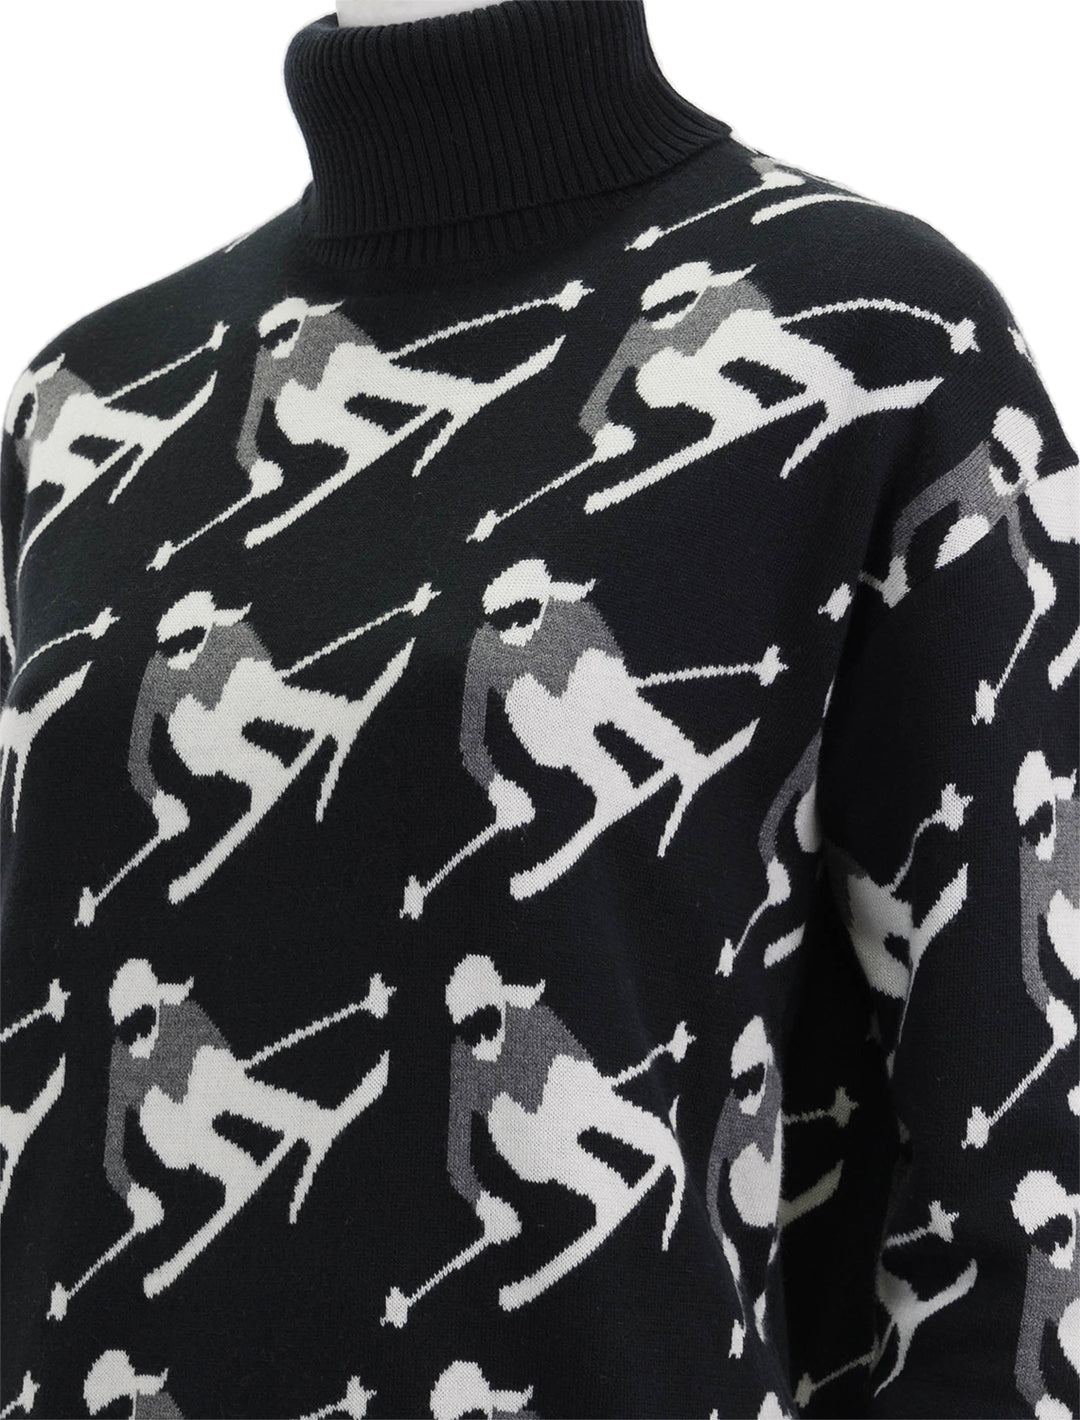 Close-up view of Alp N Rock's desi ski sweater in black.